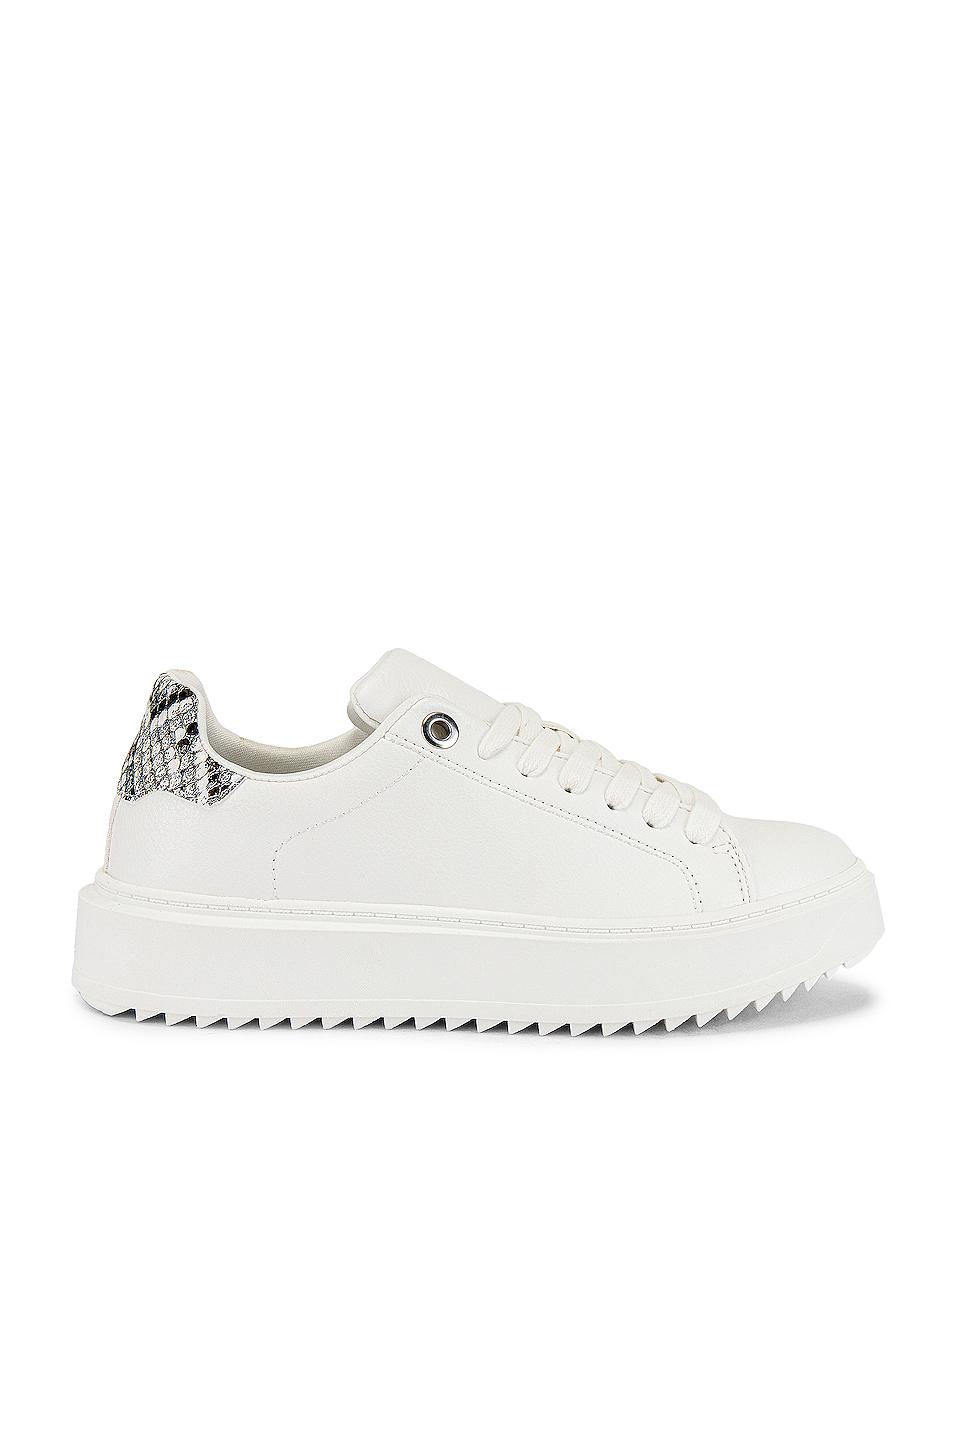 Steve Madden Catcher Sneaker in White | Lyst